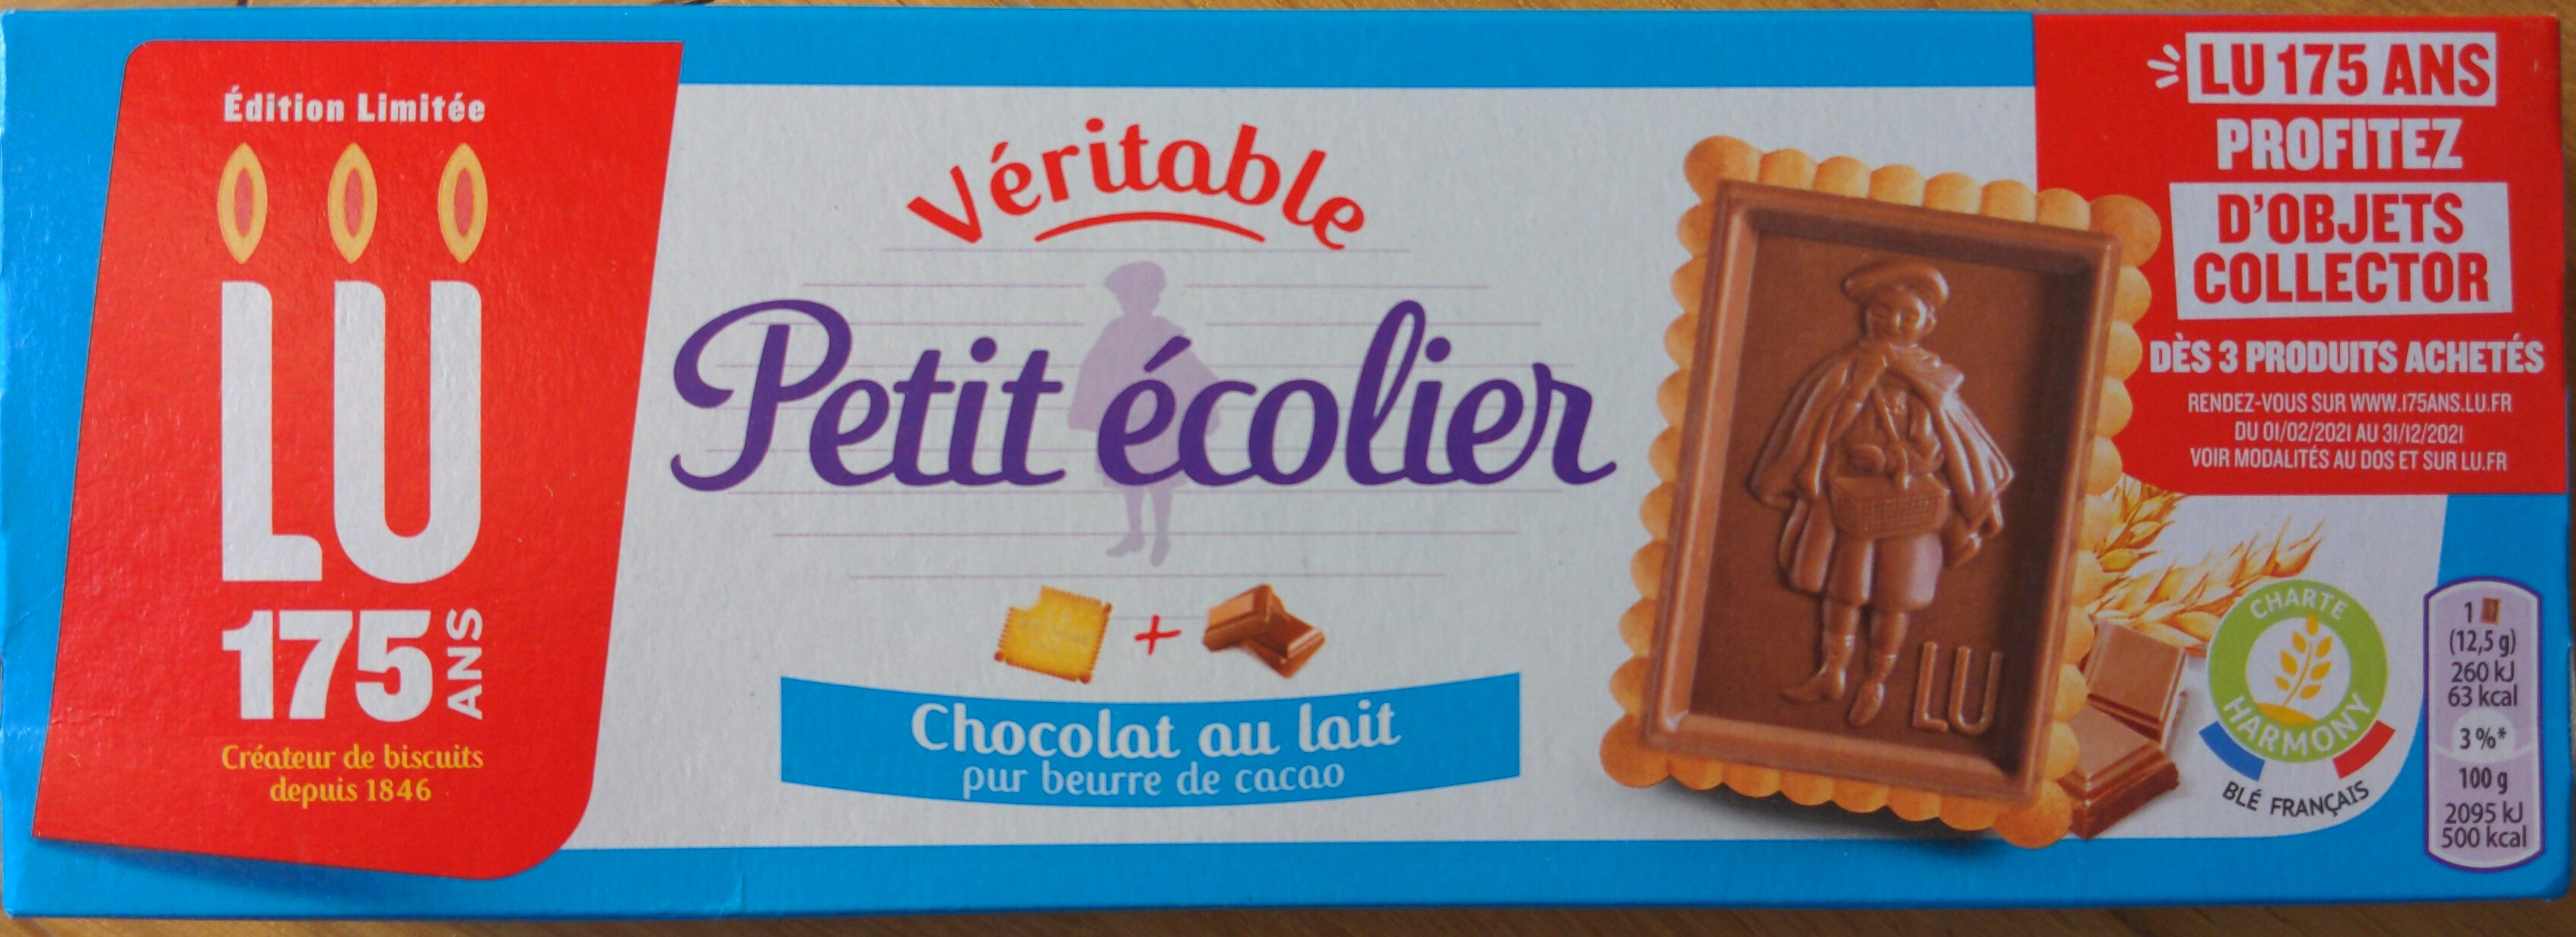 Véritable Petit Écolier Chocolat au Lait - Produit